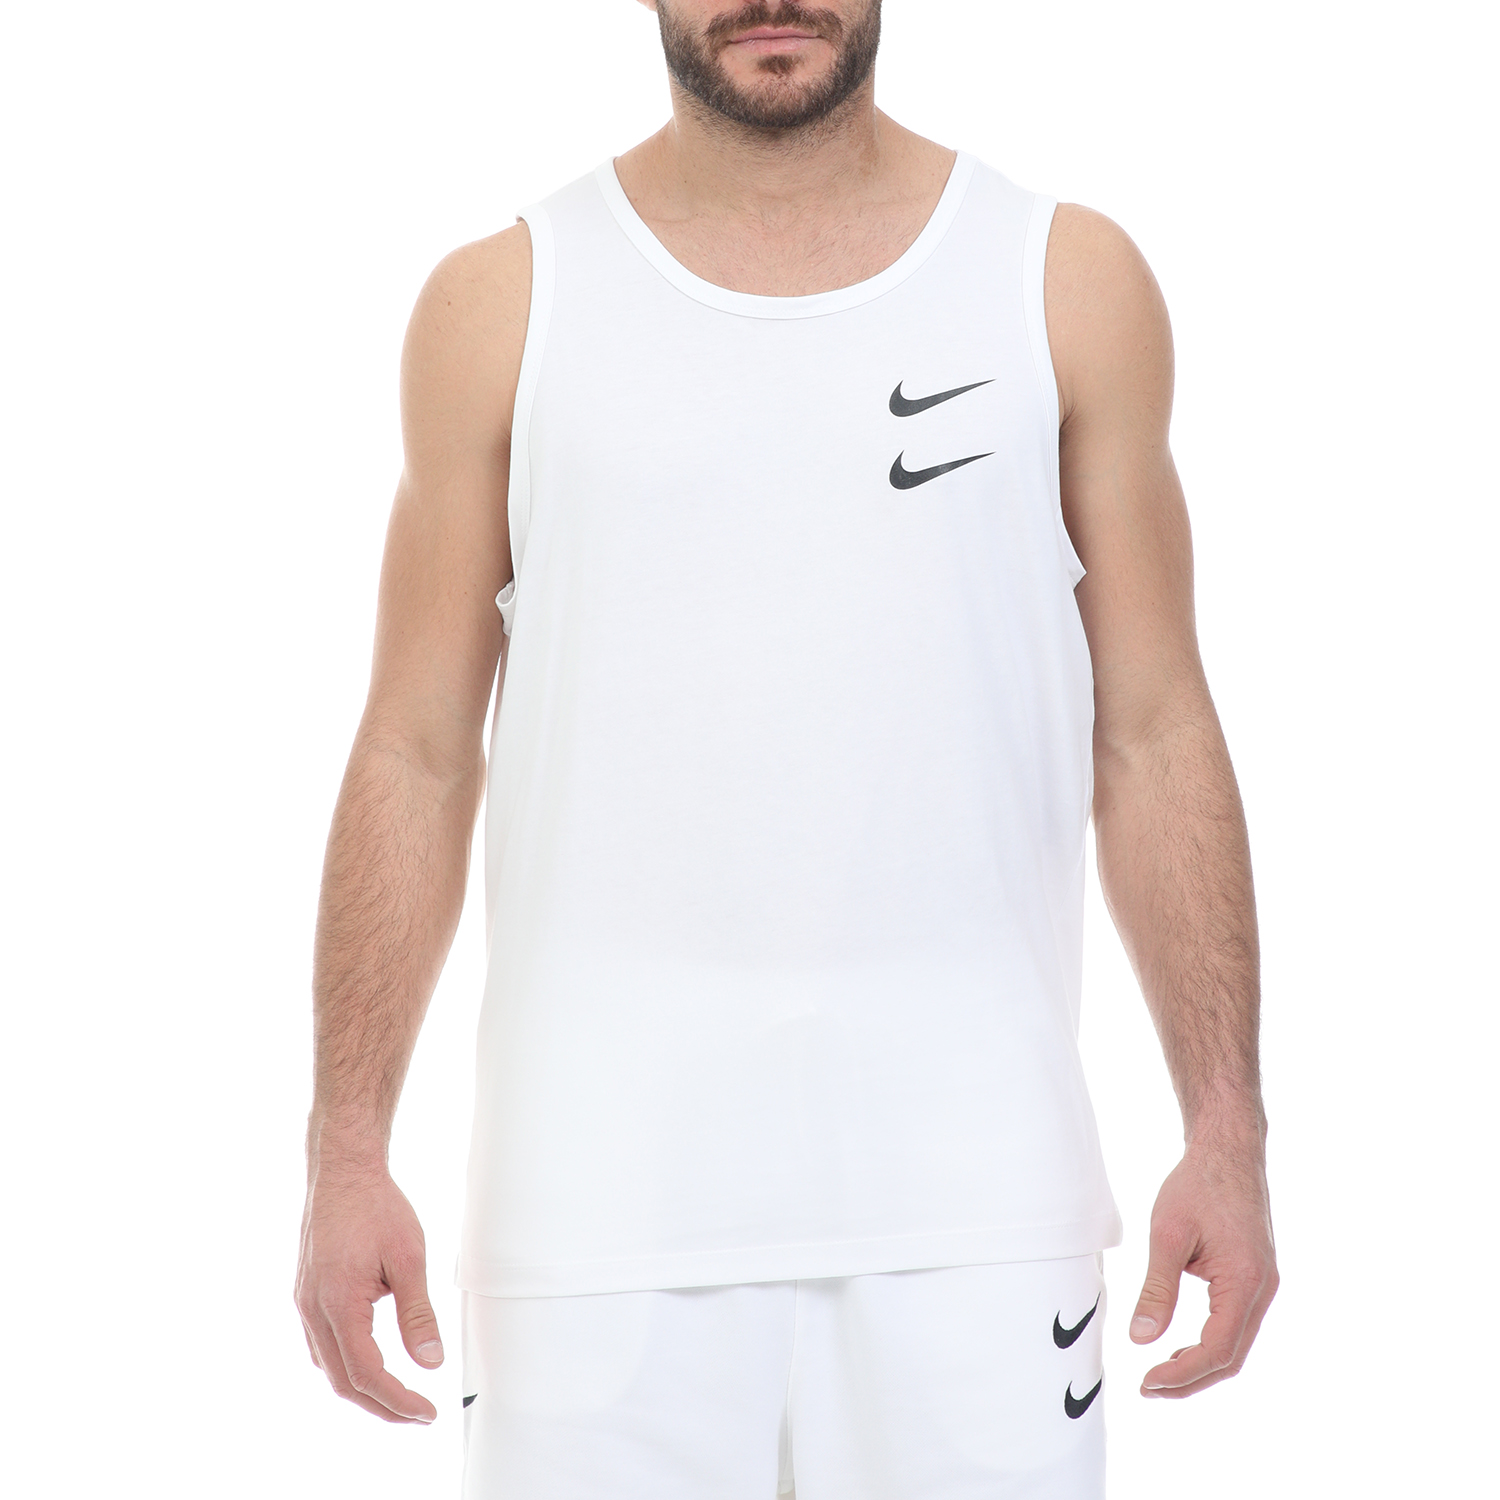 Ανδρικά/Ρούχα/Αθλητικά/T-shirt NIKE - Ανδρικό t-shirt NIKE NSW SWOOSH TANK λευκό μαύρο